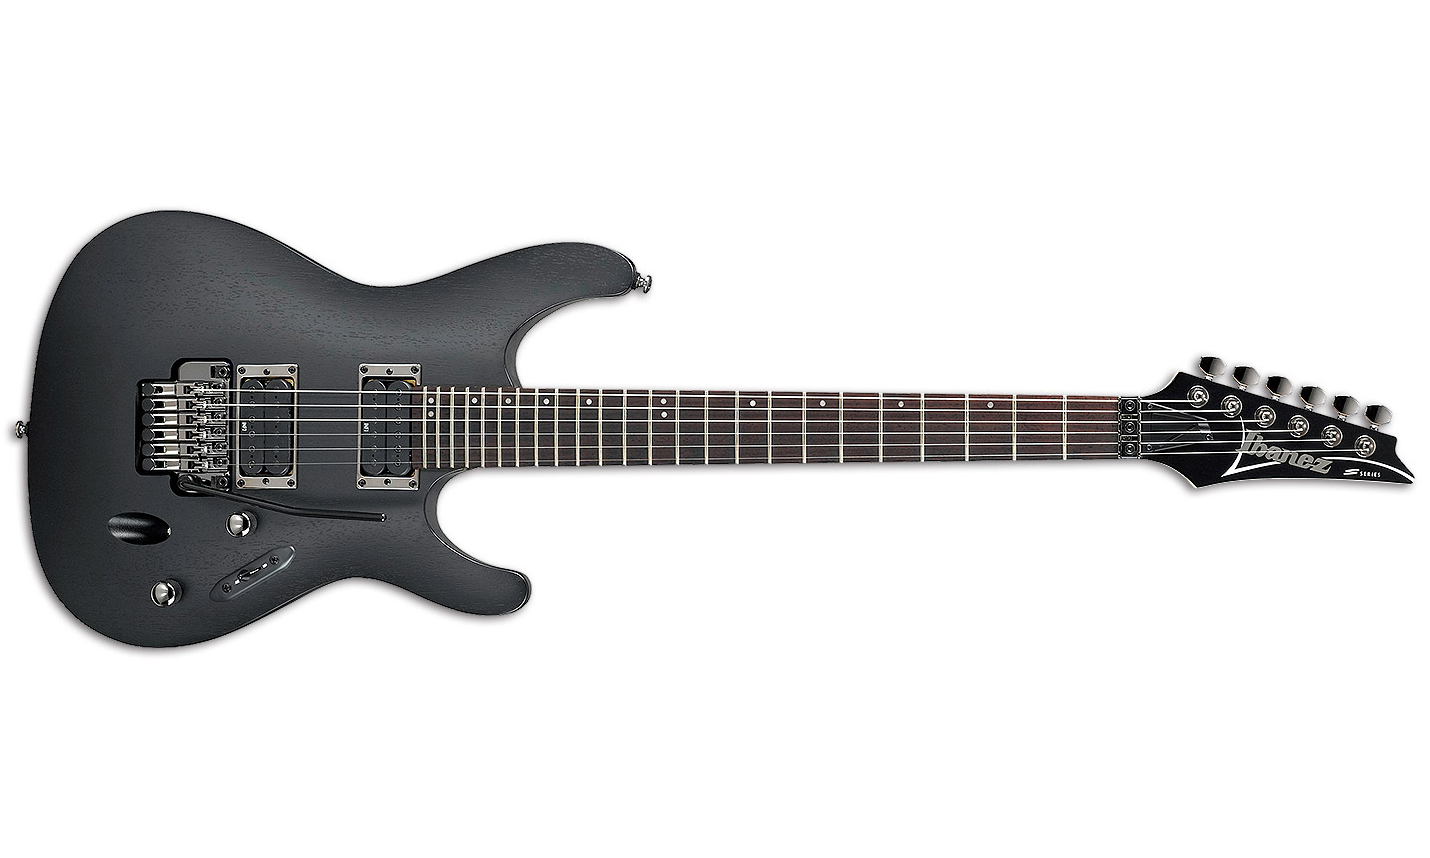 Ibanez S520 Wk Standard Hh Fr Jat - Weathered Black - E-Gitarre in Str-Form - Variation 1